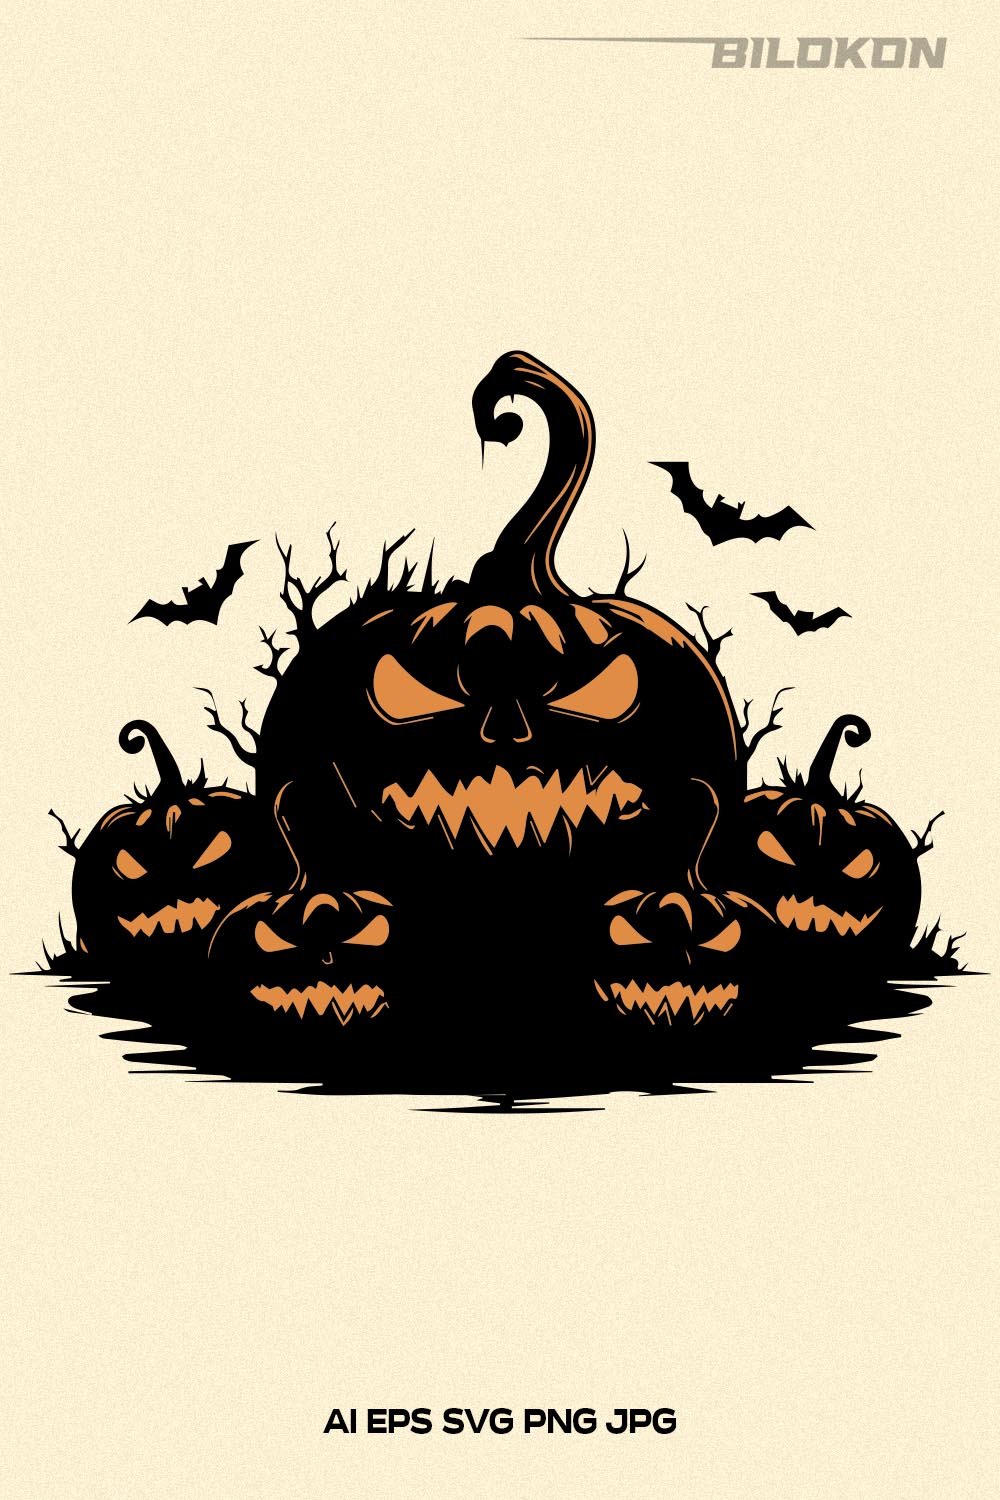 Scary halloween pumpkin, Halloween pumpkins, Vector SVG pinterest preview image.